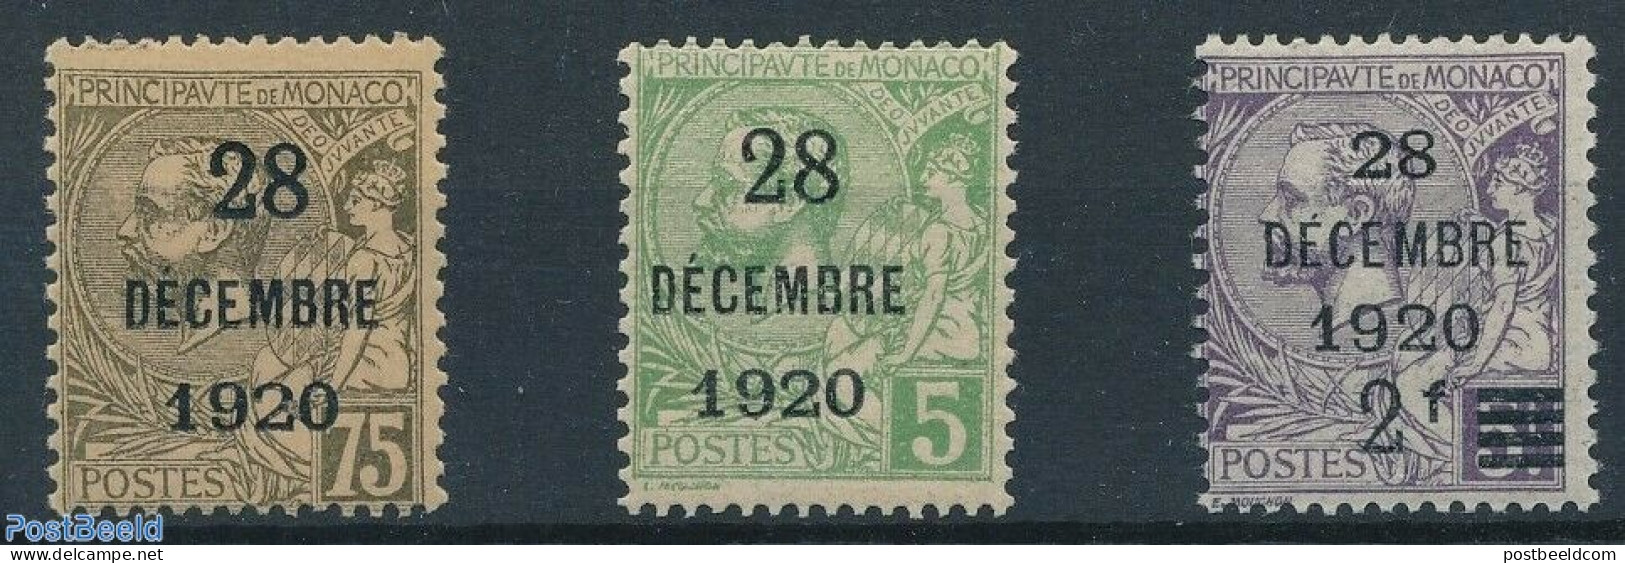 Monaco 1921 28 DEC 1920 Overprints 3v, Unused (hinged) - Nuevos